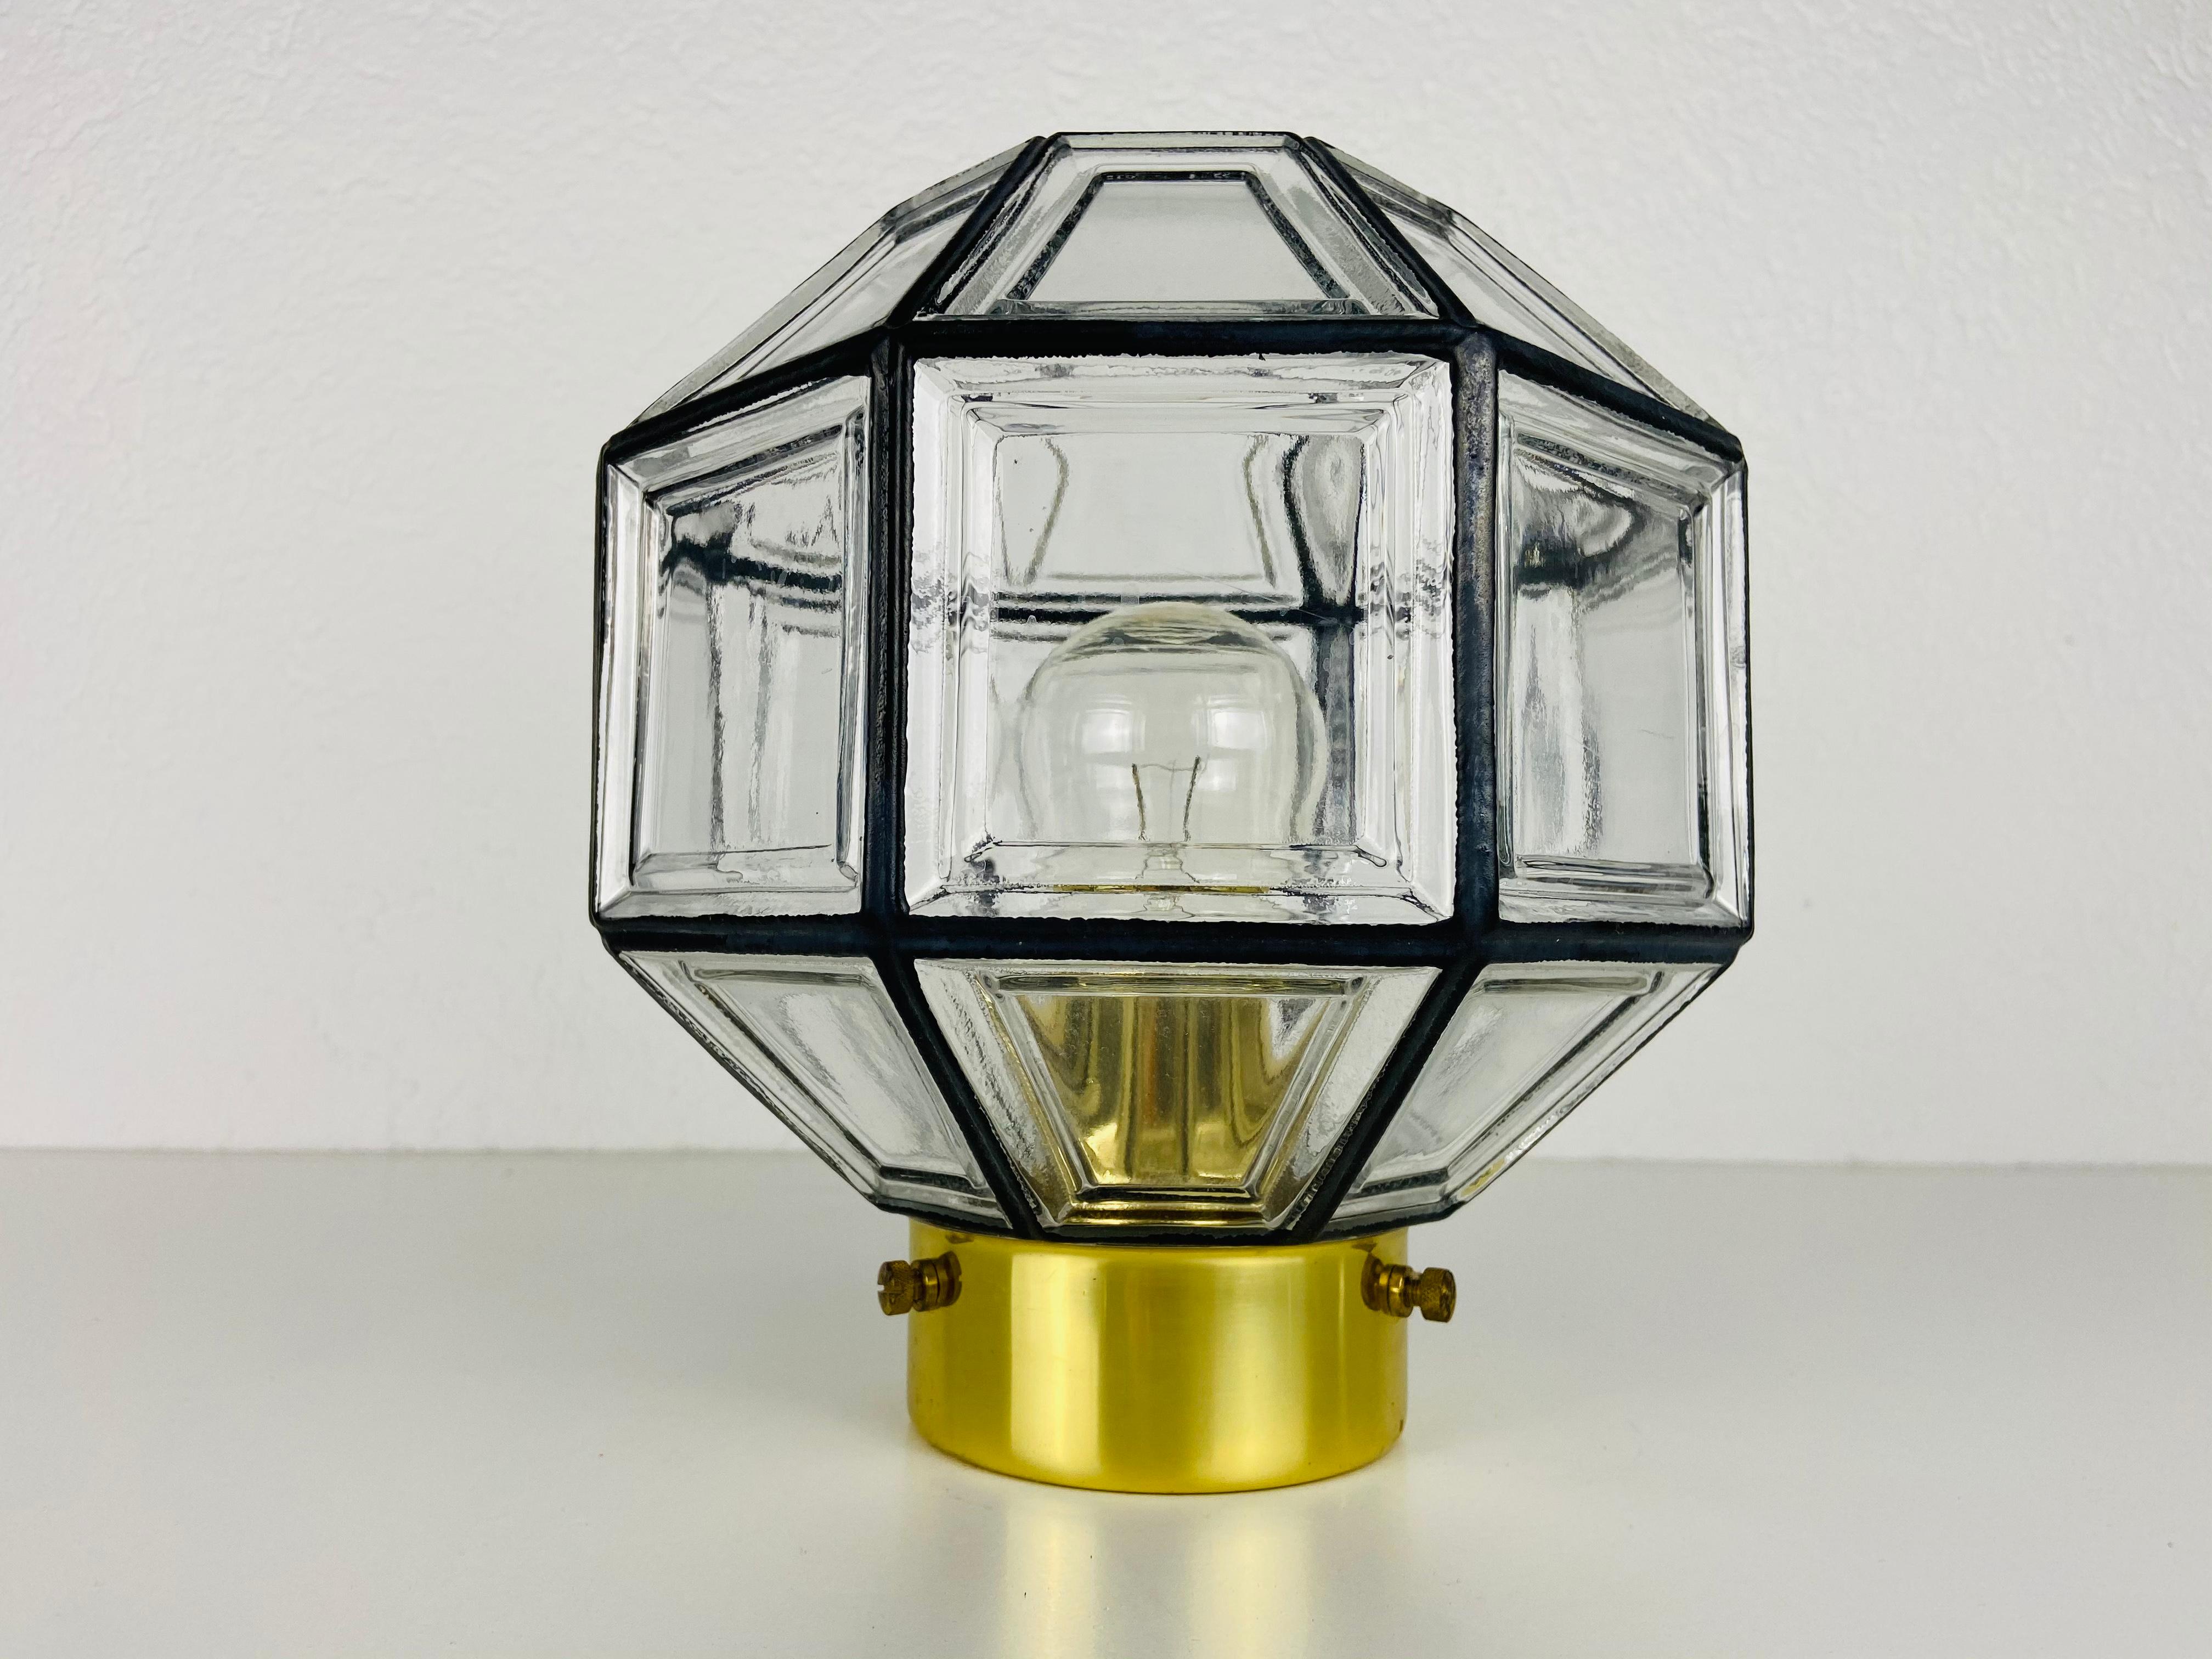 Une monture encastrée moderne du milieu du siècle par Glashütte Limburg, fabriquée dans les années 1960 en Allemagne. Il est fascinant avec sa belle forme et son verre à bulles. Le luminaire a un très beau design minimaliste.

La lampe nécessite